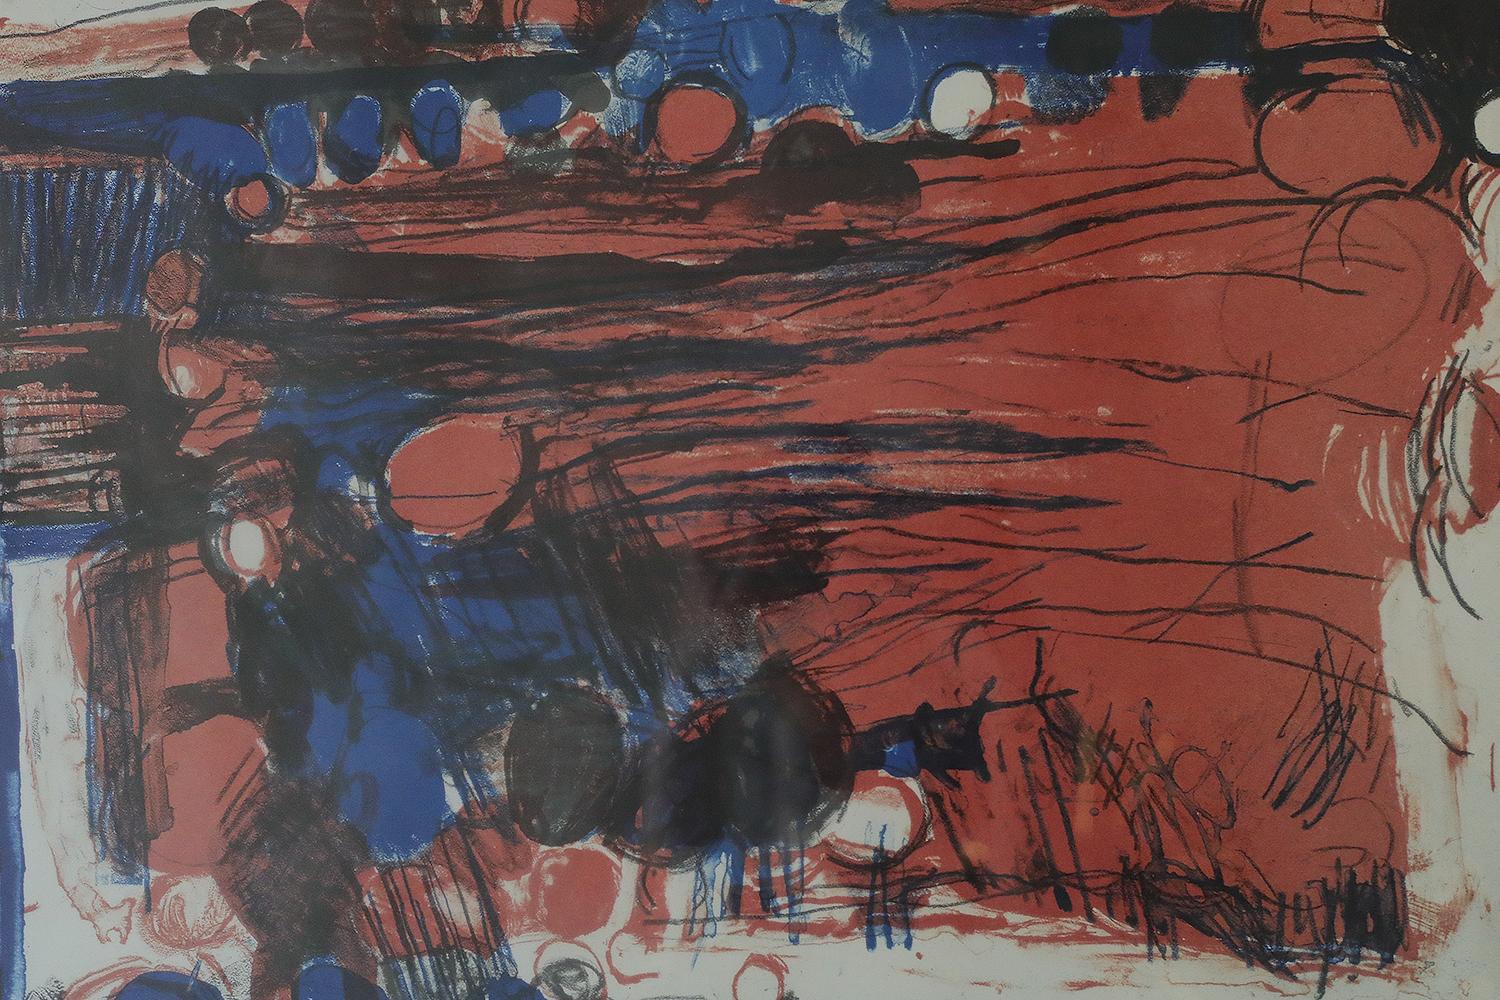 Denice Zetterquist, Komposition, 1965
Farblithographie
Nummer 119/235
Das Werk ist vom Künstler signiert, datiert und einzeln nummeriert (Bleistift)
Arbeitsmaße 53/64
Das Werk ist gerahmt

Denice Zetterquist (1929 - 2014) war eine schwedische